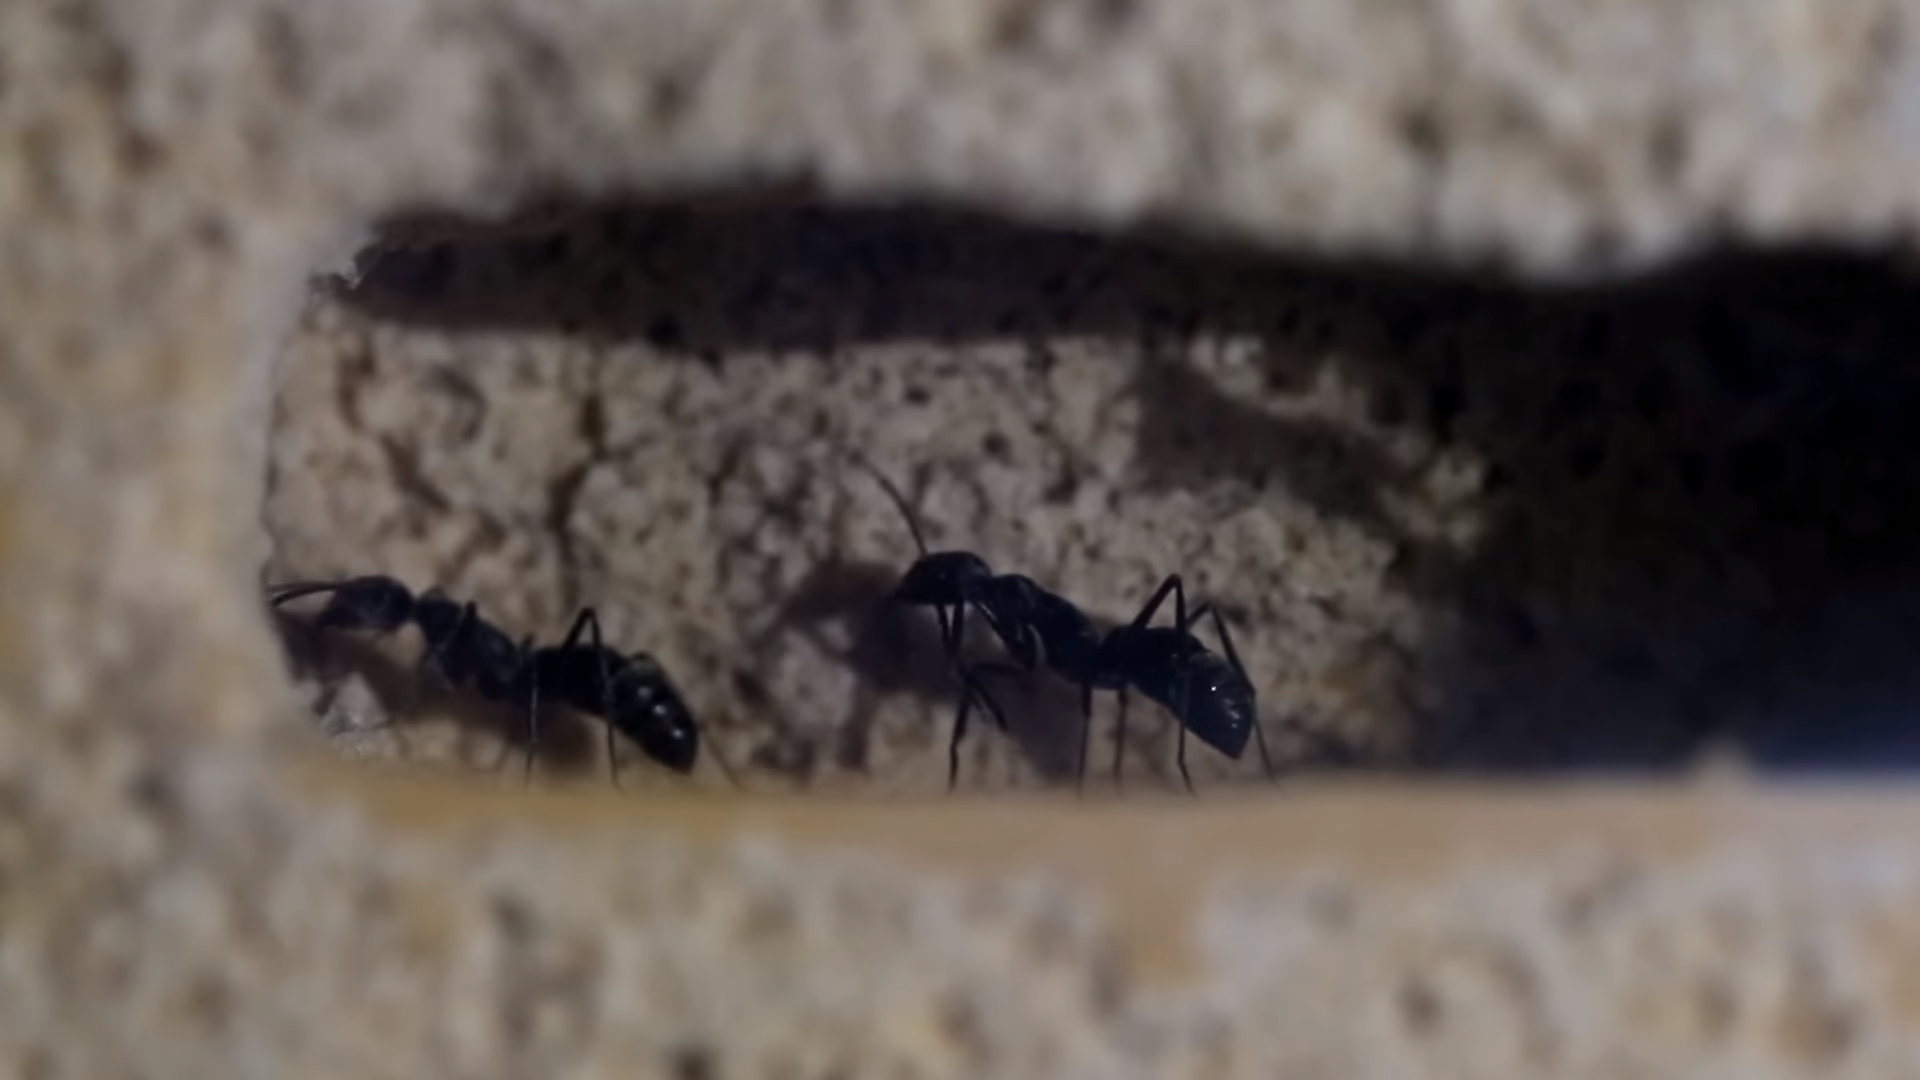 bullet ant queen